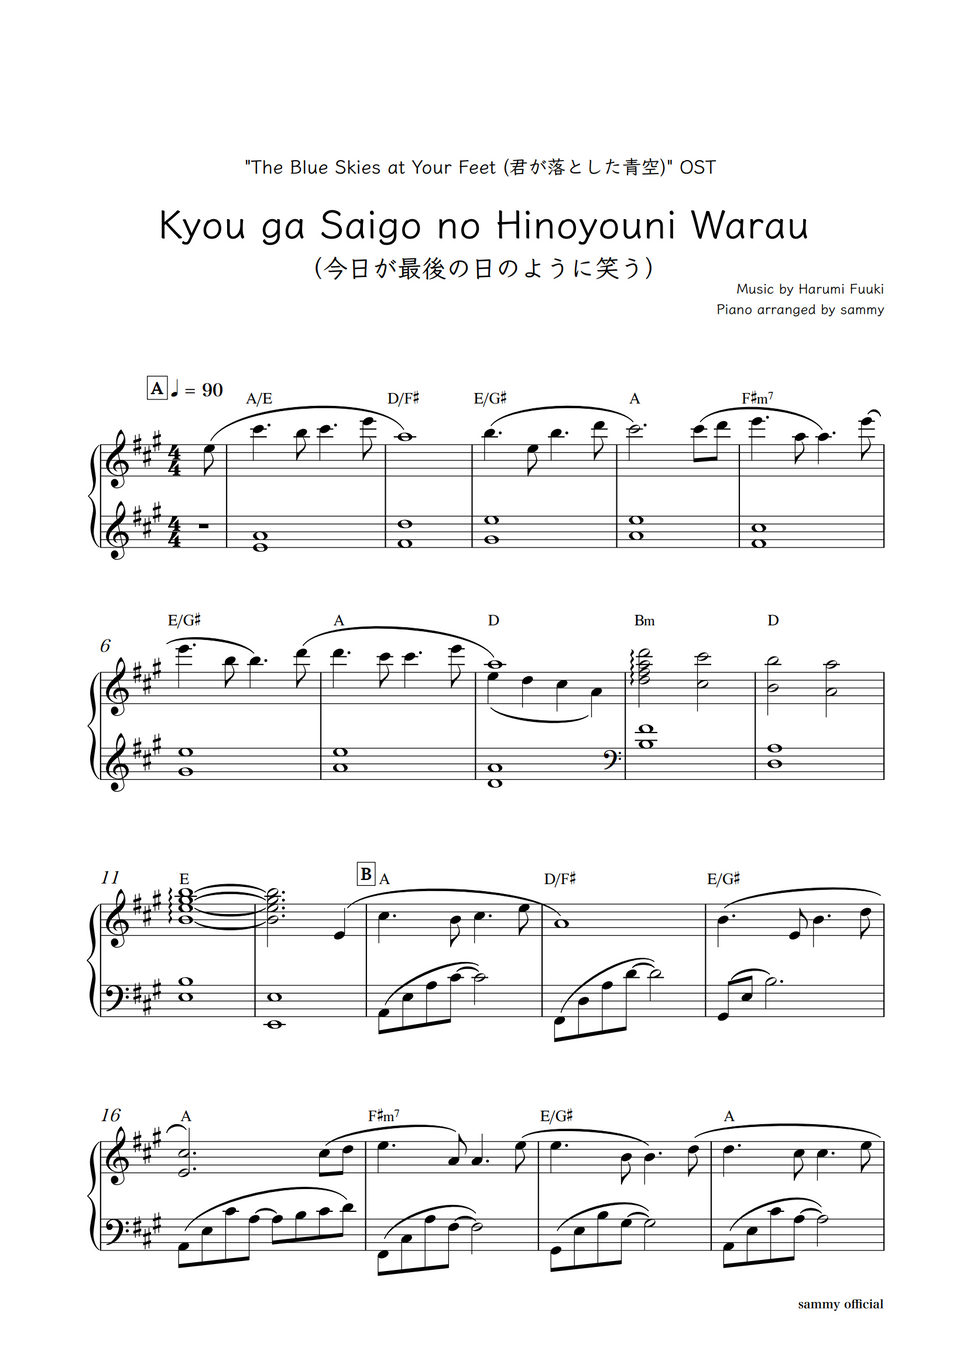 "The Blue Skies at Your Feet (君が落とした青空)" OST - Kyou ga Saigo no Hinoyouni Warau (今日が最後の日のように笑う) by sammy